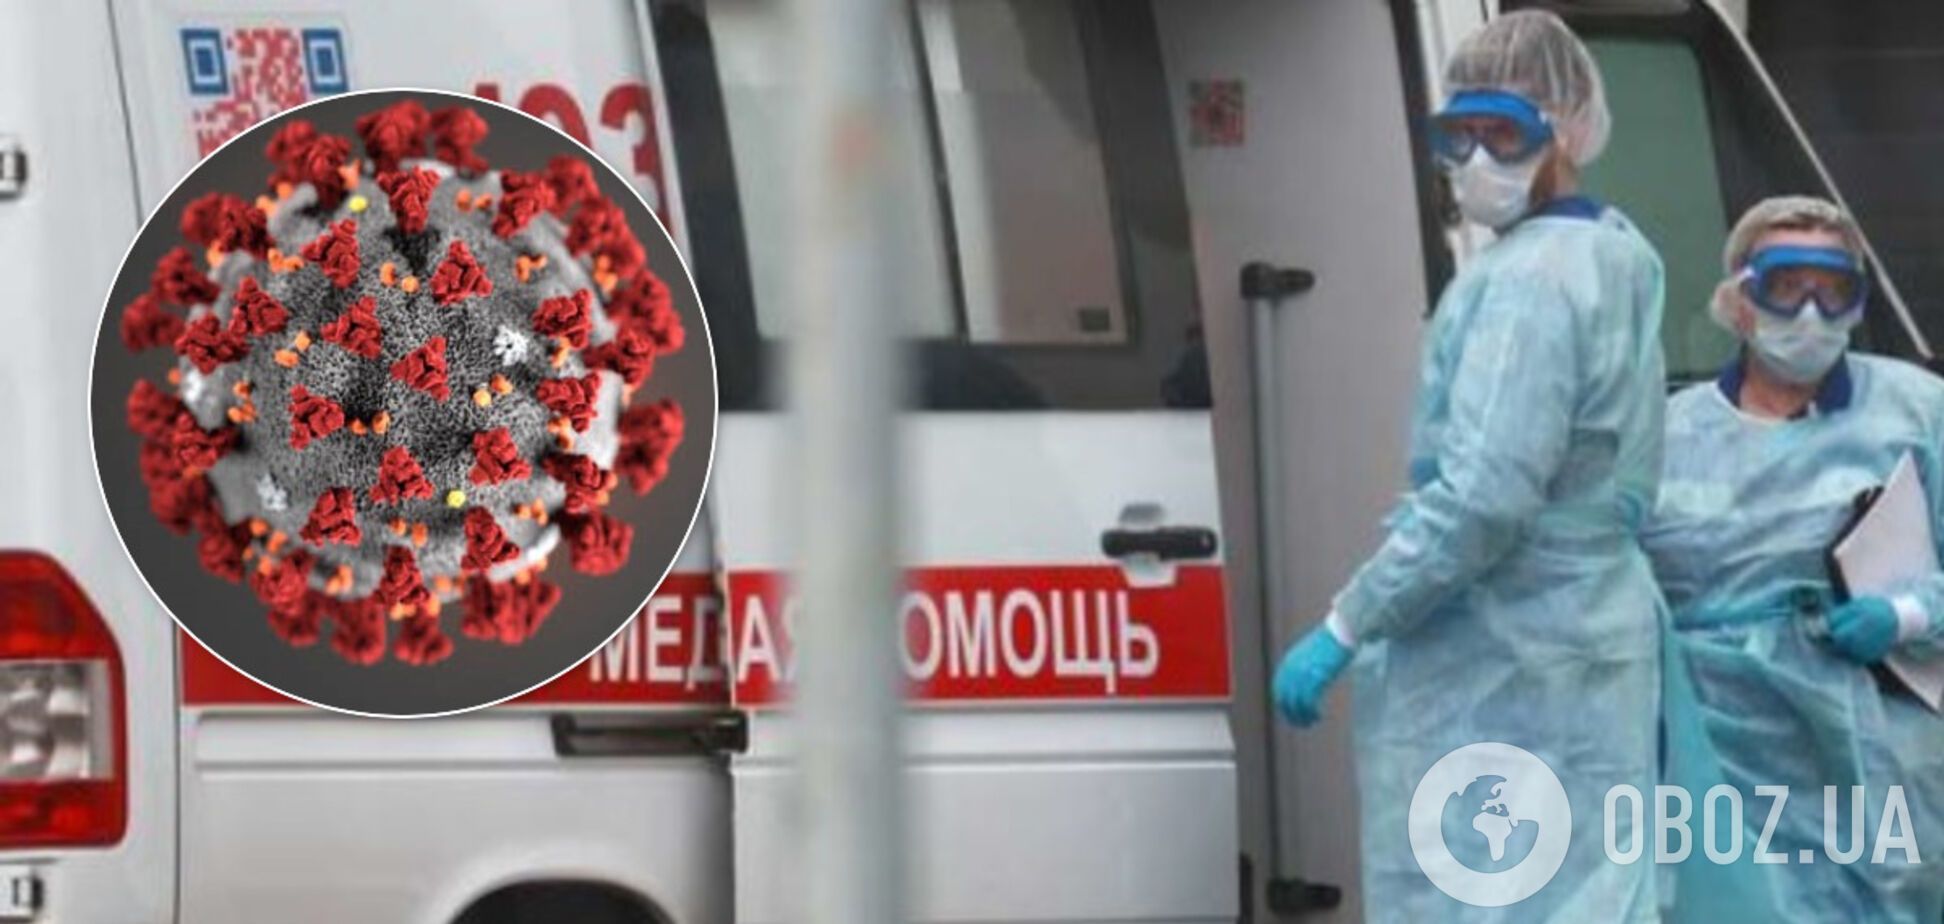 Епідемія коронавірусу в Україні йде на спад: у НАН розповіли про вирішальний період